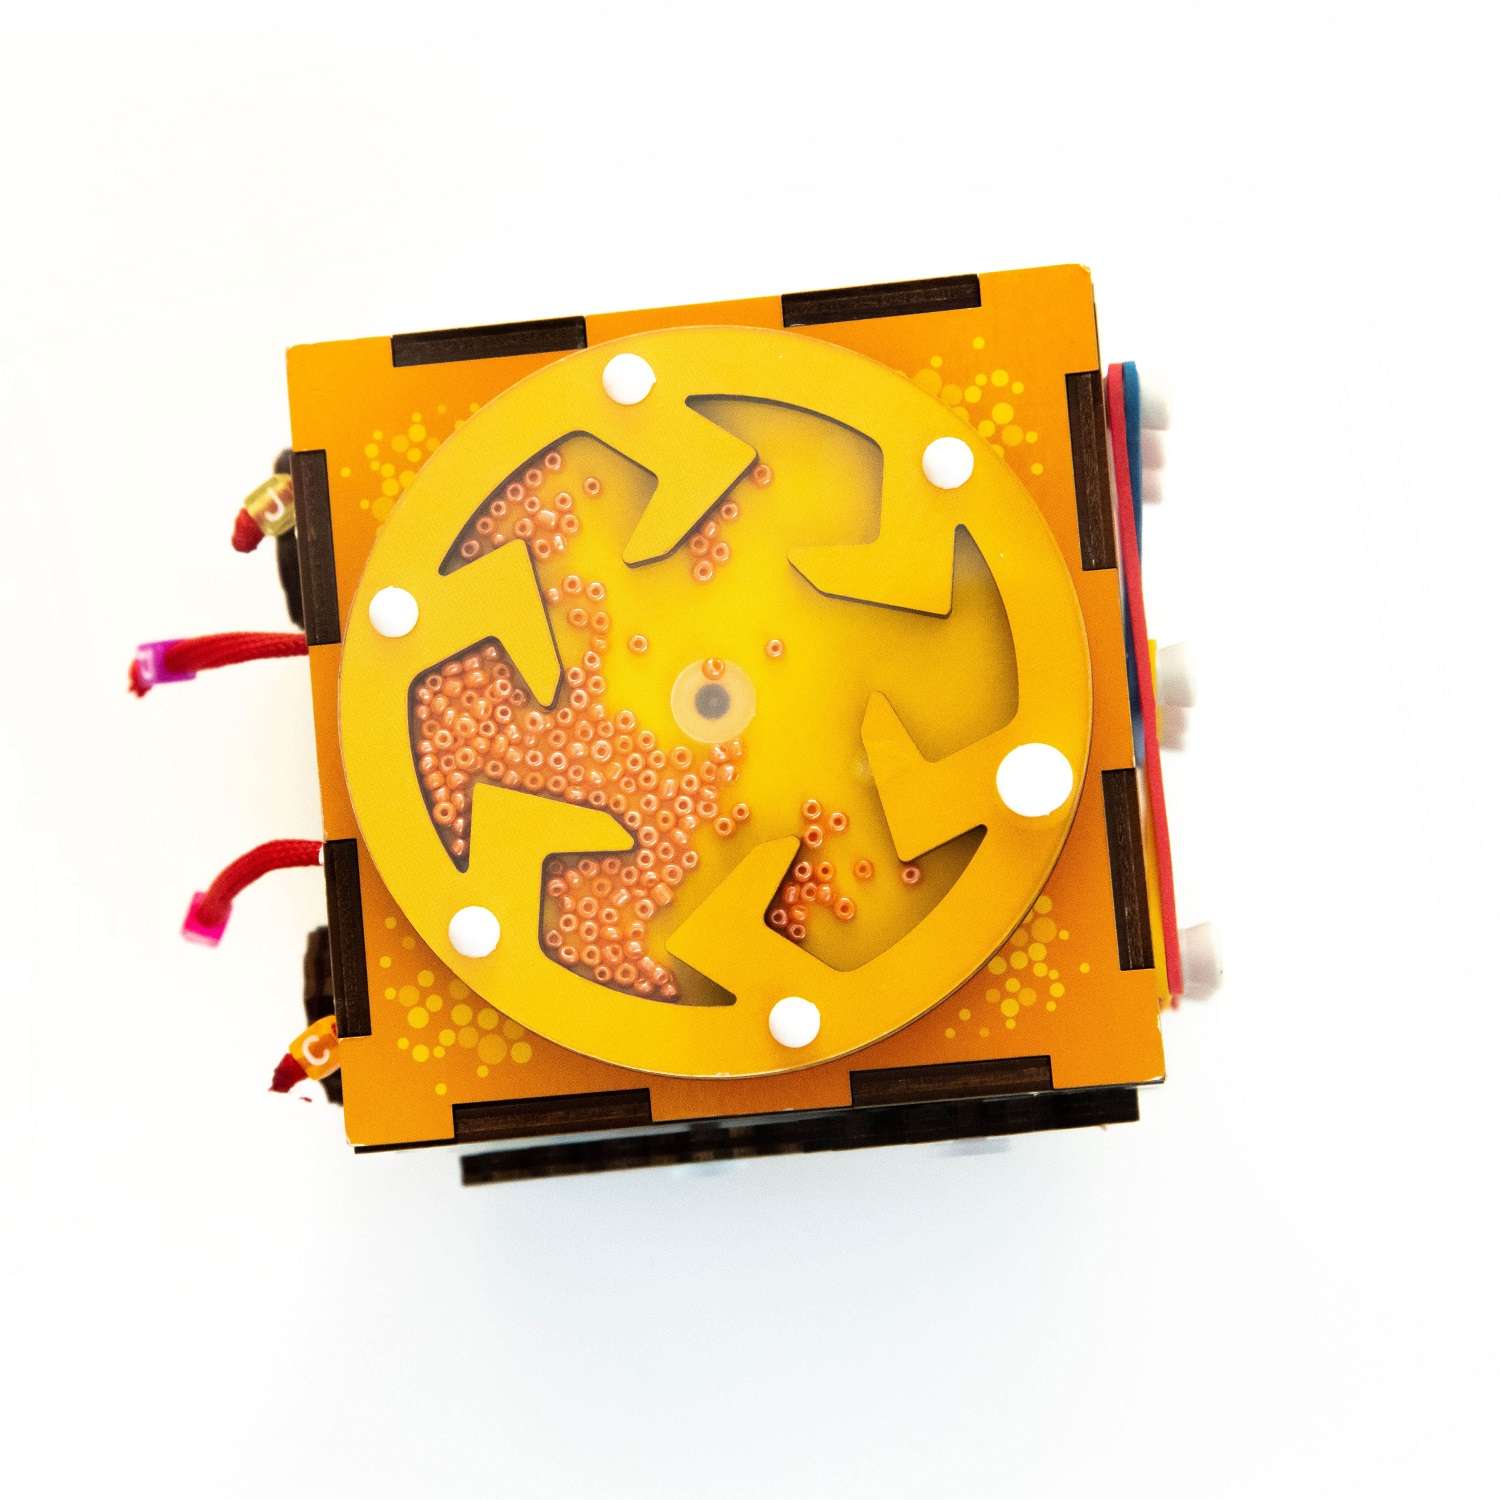 Бизиборд Мастер игрушек Бизи-кубик - фото 2